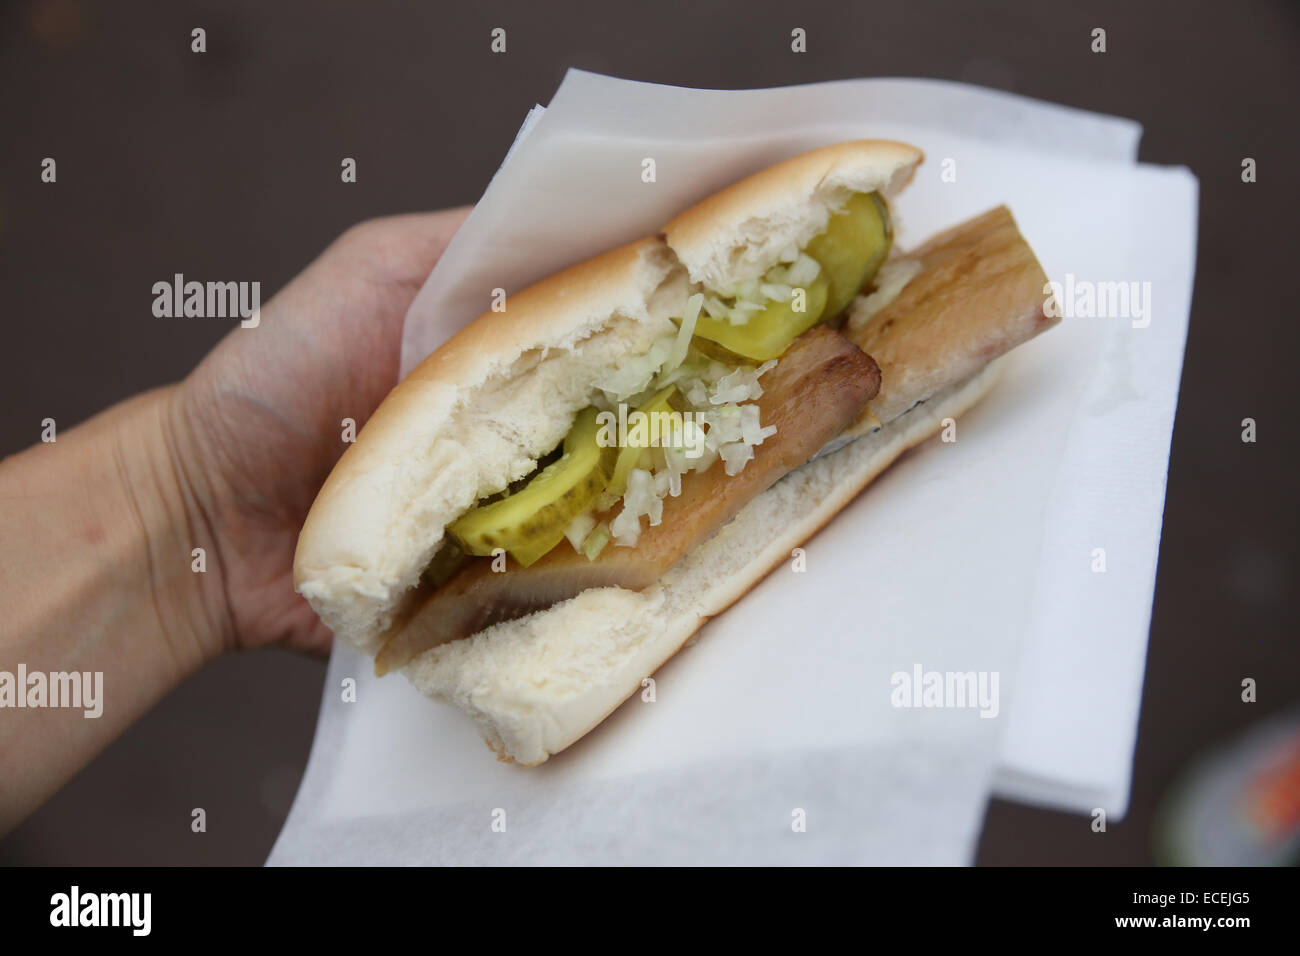 Partage de l'alimentation de rue amsterdam sandwich Banque D'Images